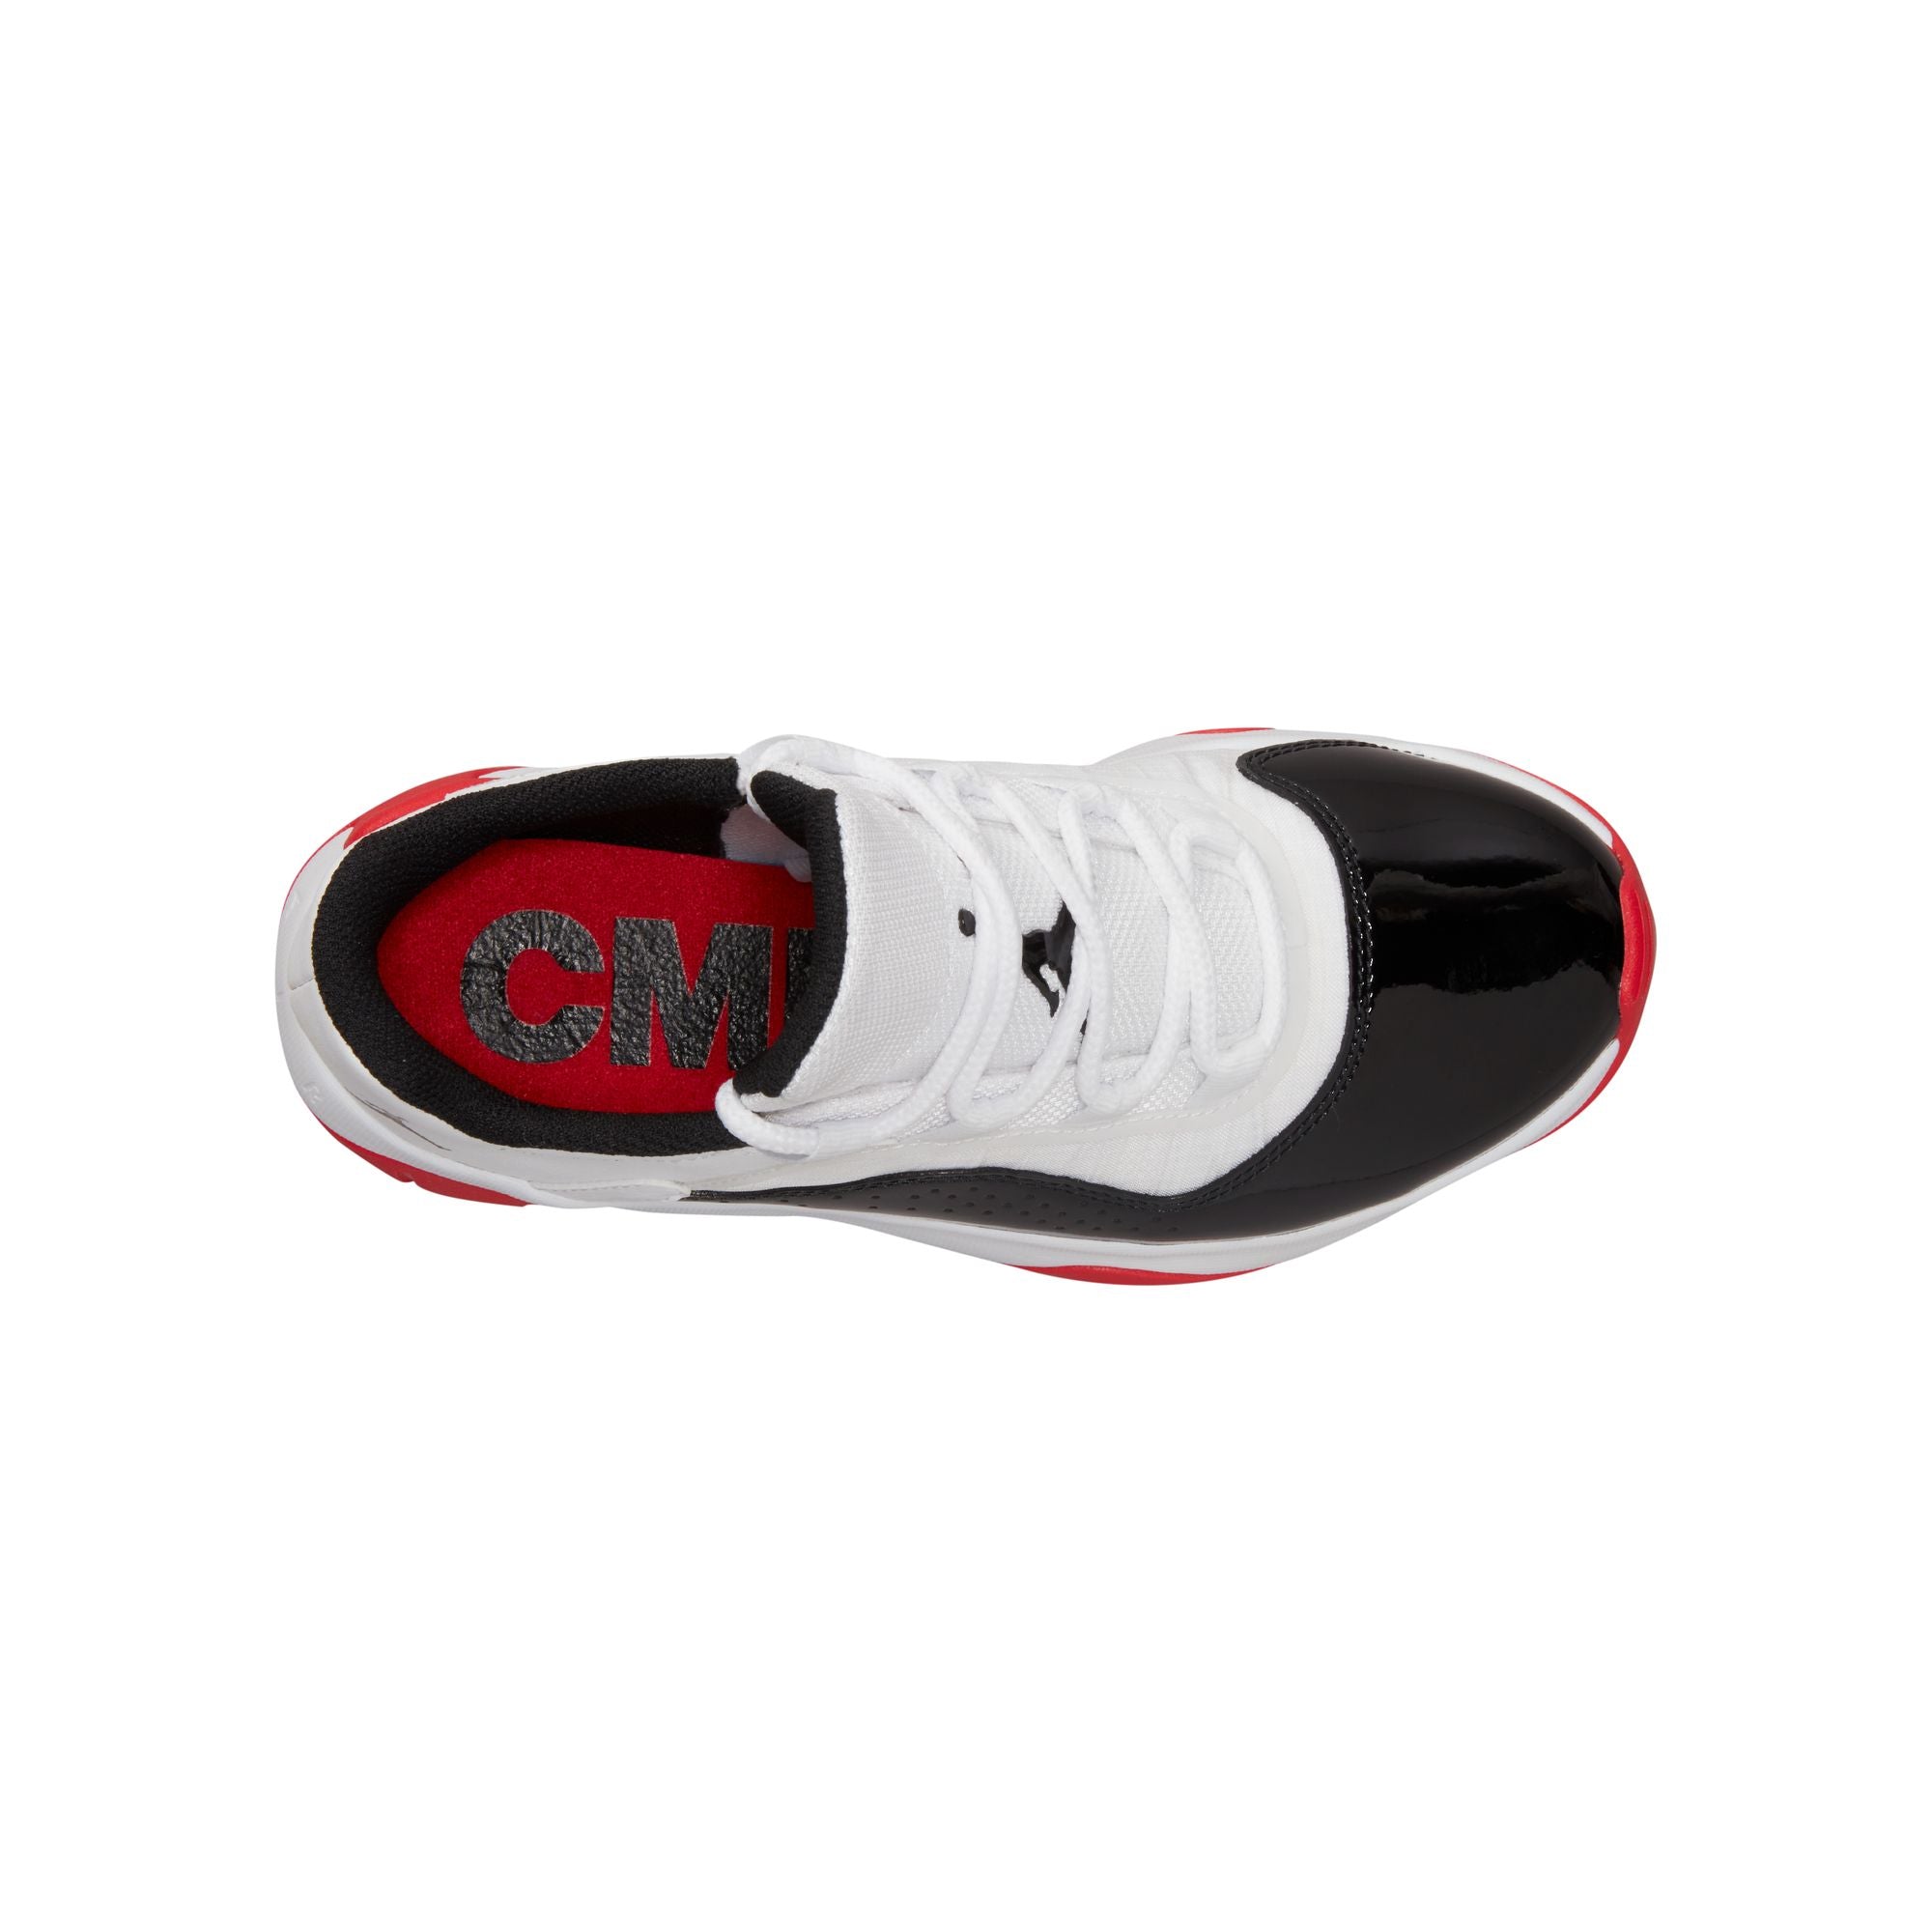 Air Jordan 11 CMFT Low Big Kids' Shoes